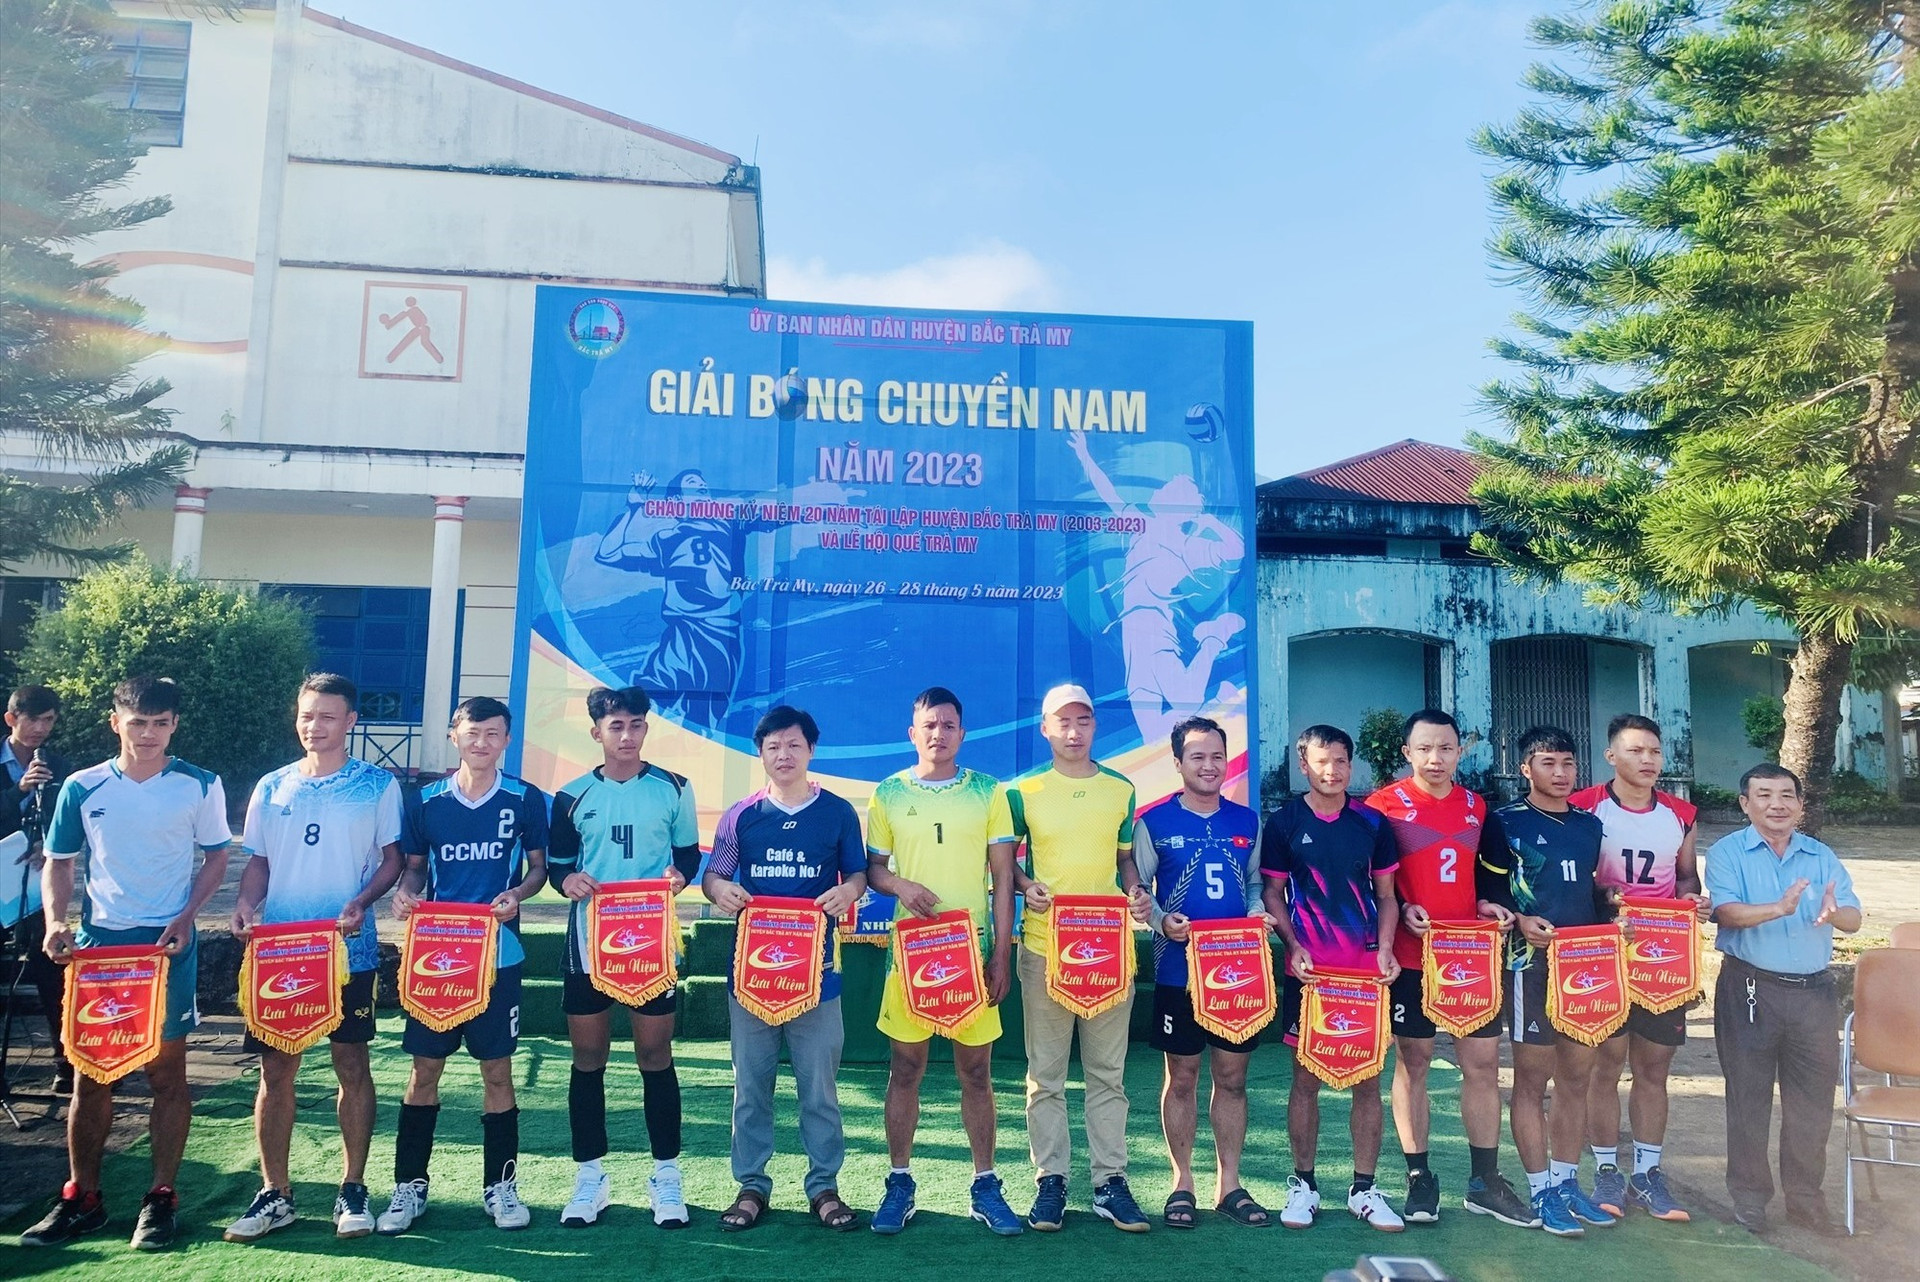 Ông Lê Văn Tuấn - Phó chủ tịch UBND huyện Bắc Trà My trao cờ lưu niệm cho các đội bóng tham gia giải. ẢNH TÚ VÂN